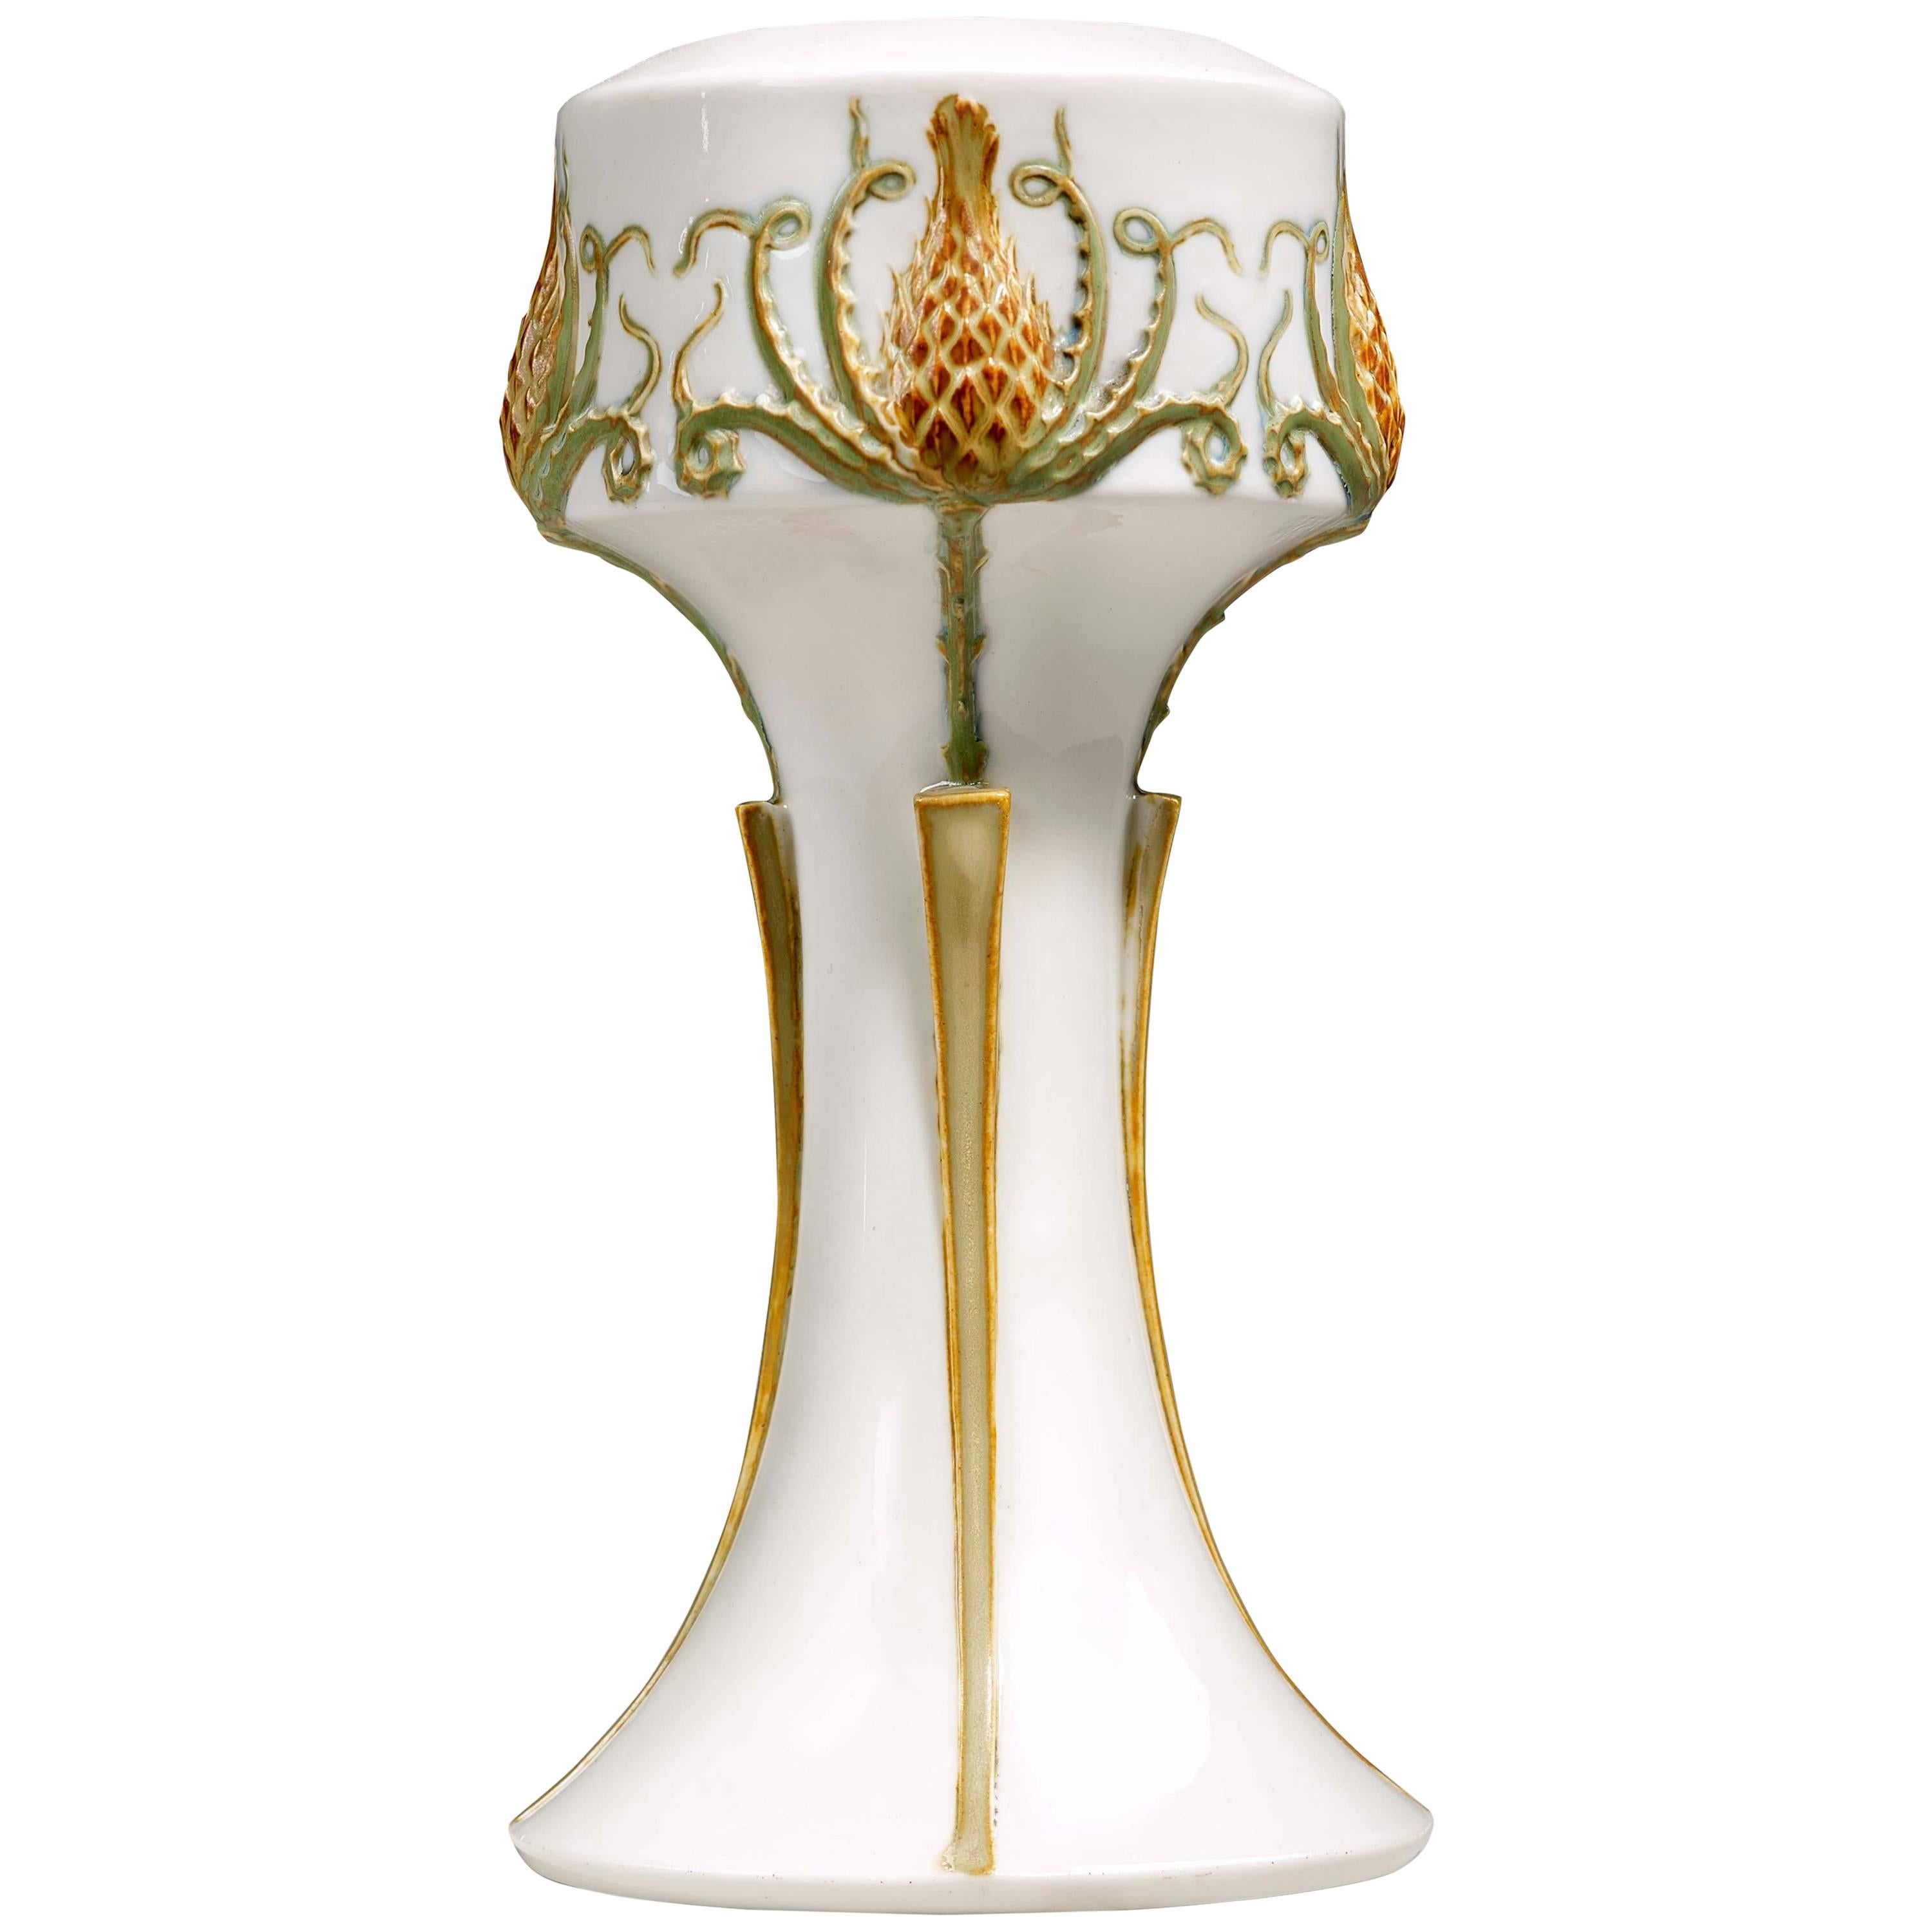 Manufacture Nationale de Sèvres, an Art Nouveau Vase, Dated 1904 For Sale